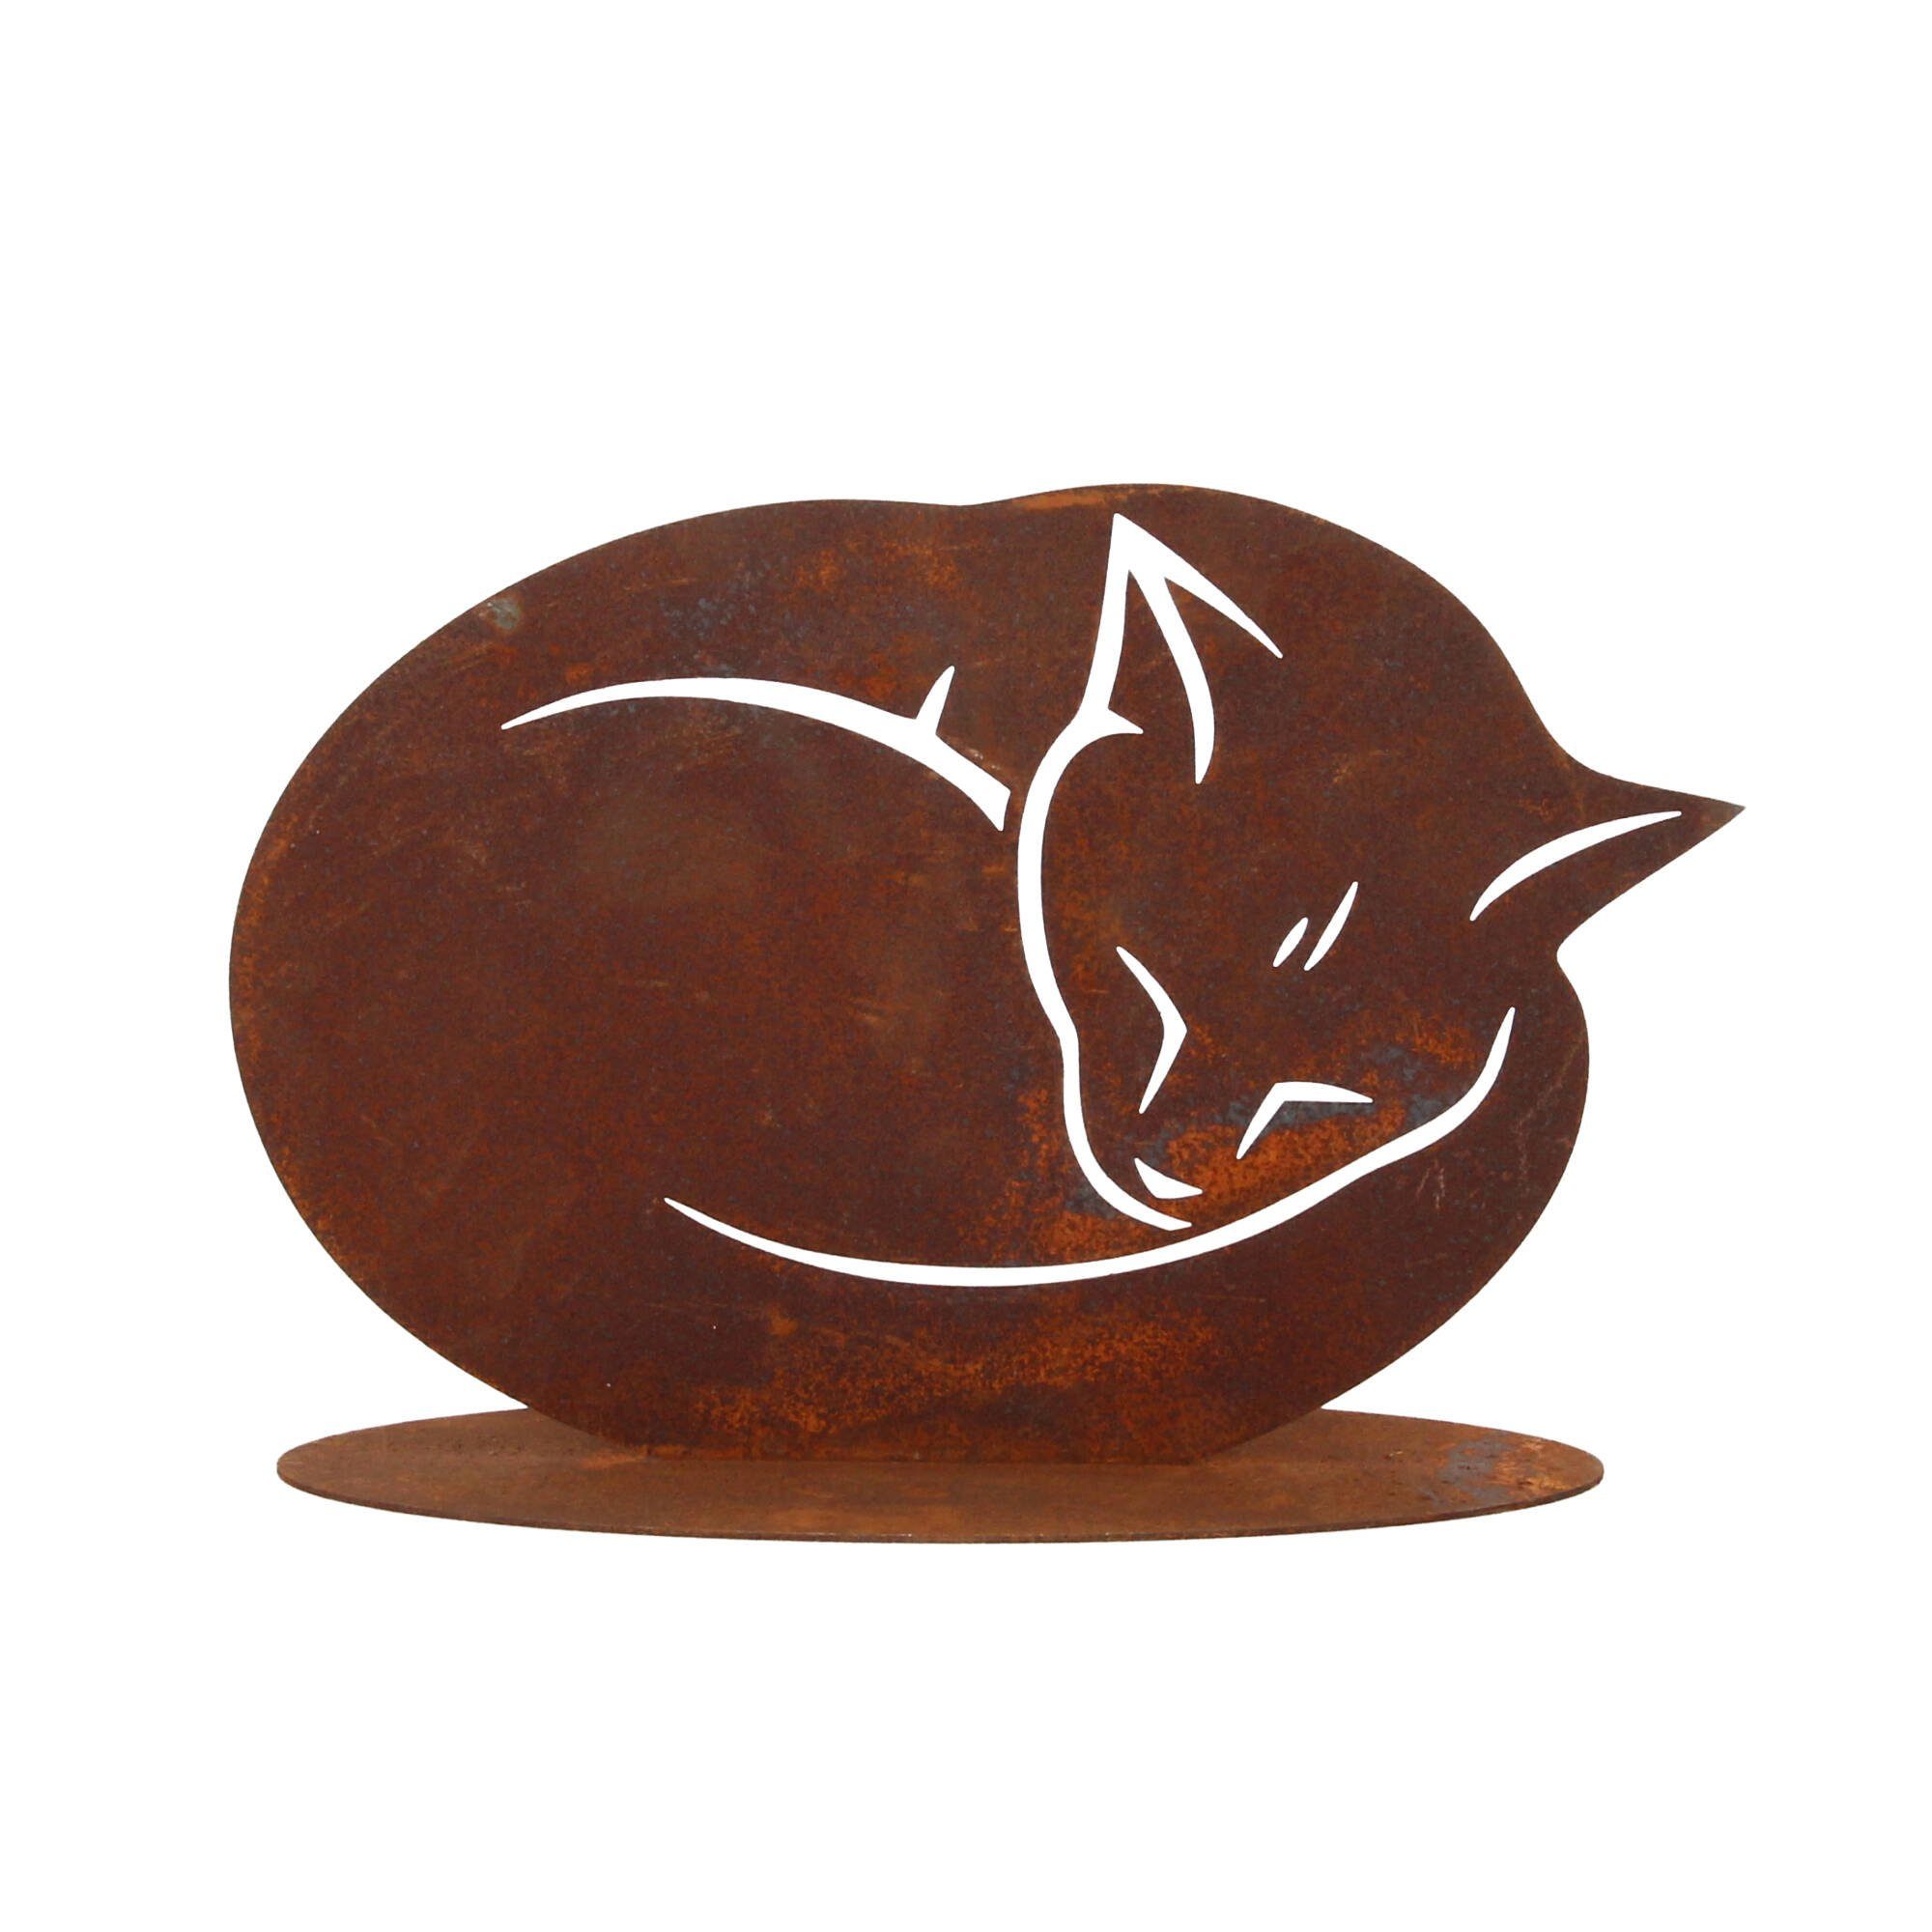 Platte auf Skulptur Katze Edelrost cm 25x17